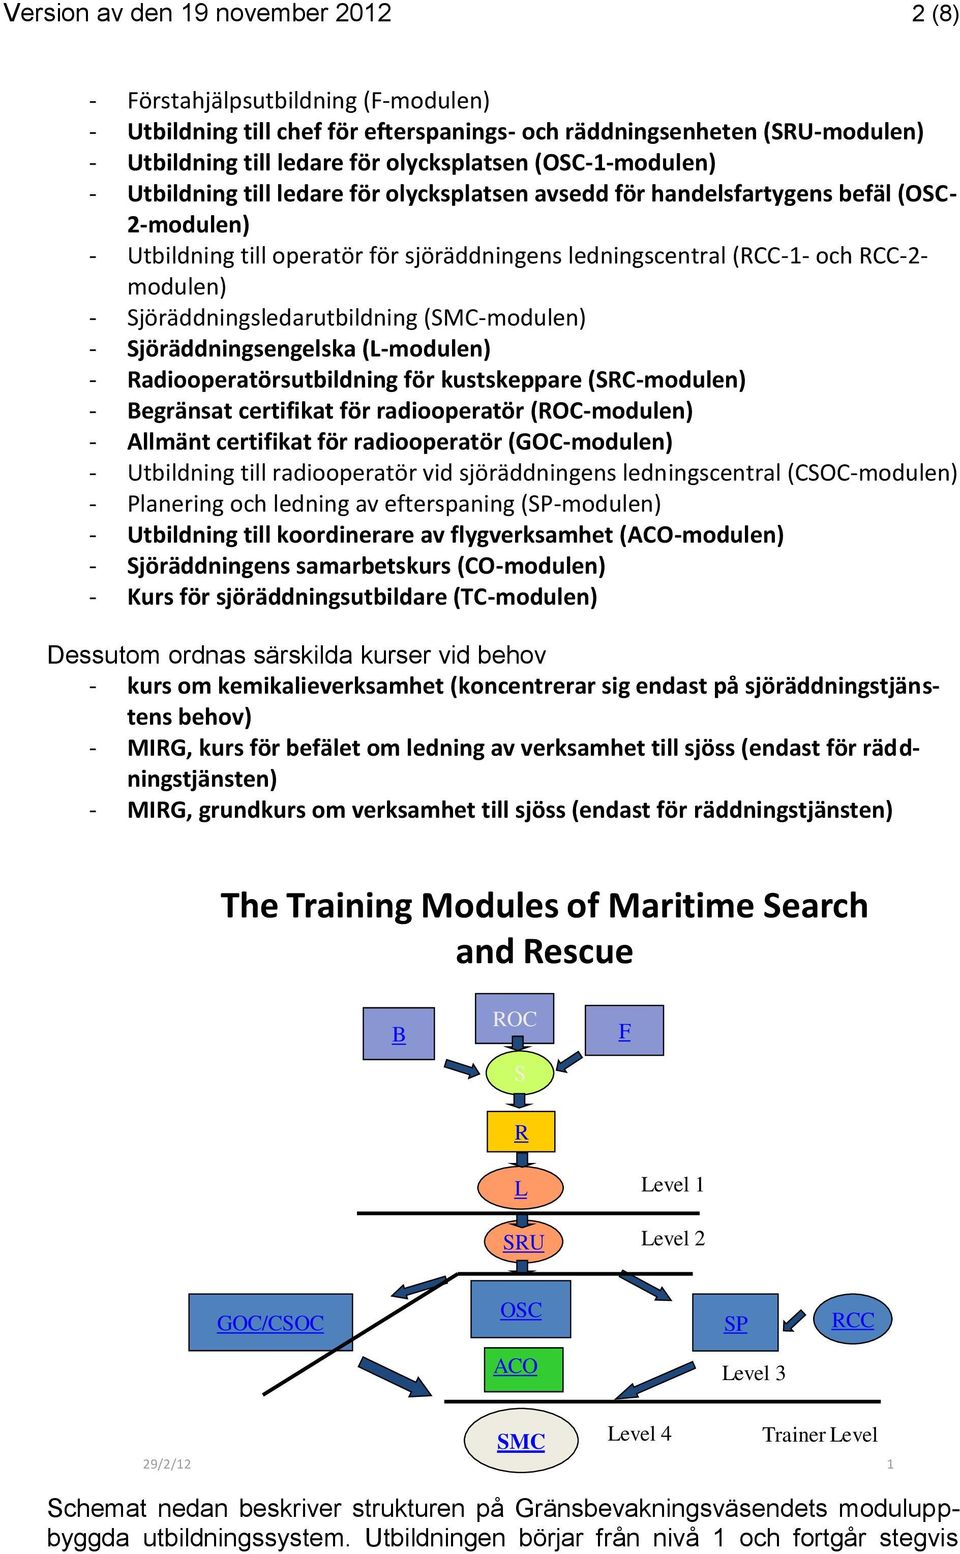 - Sjöräddningsledarutbildning (SMC-modulen) - Sjöräddningsengelska (L-modulen) - Radiooperatörsutbildning för kustskeppare (SRC-modulen) - Begränsat certifikat för radiooperatör (ROC-modulen) -